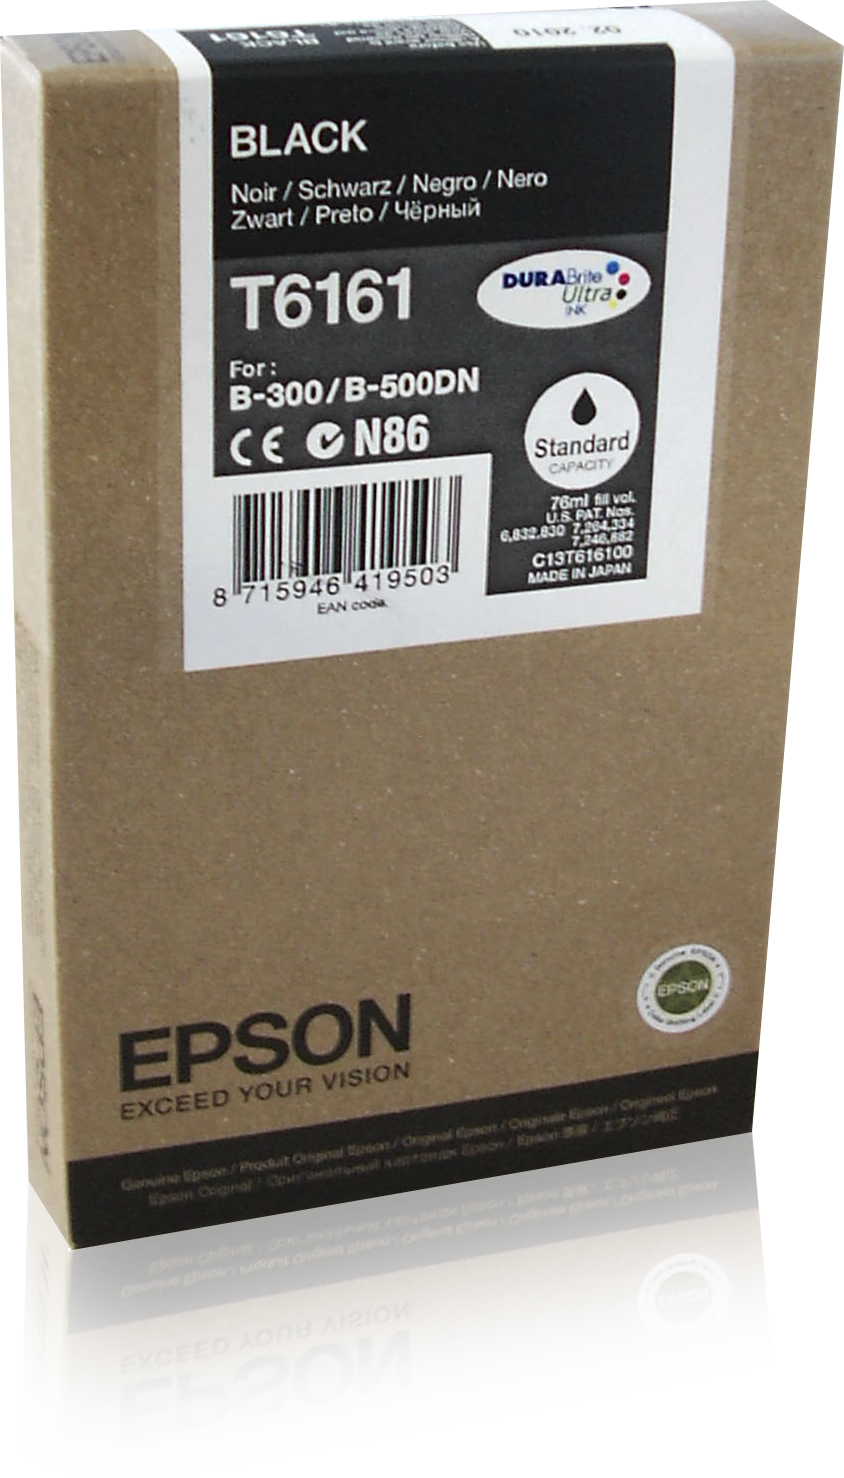 Epson Inkt tank Black T6161 DURABrite Ultra Ink single pack / zwart